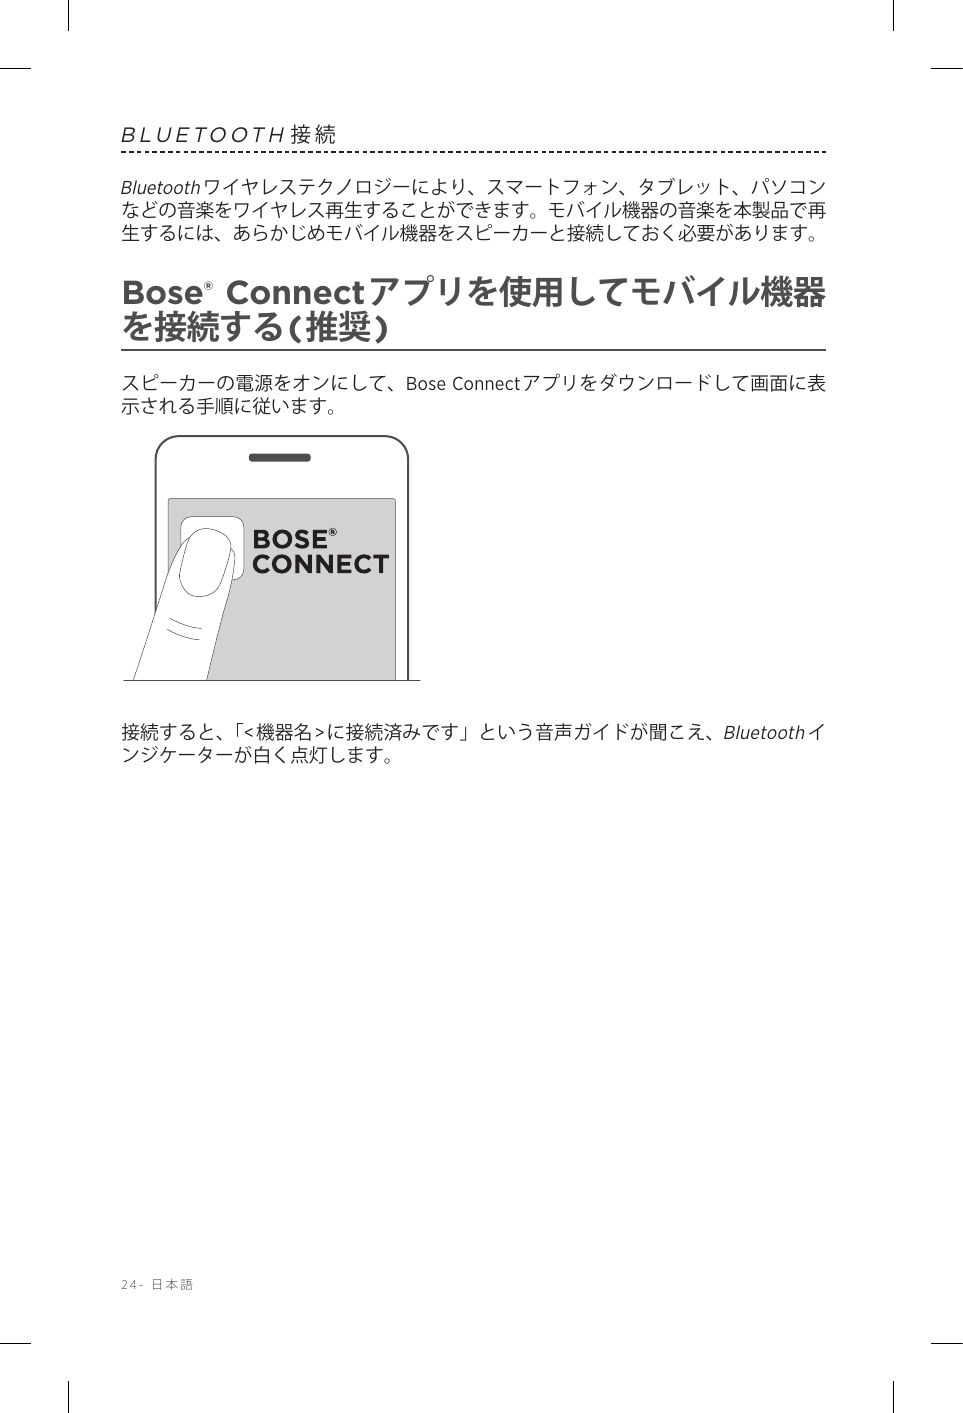 24-  日本語BLUETOOTH接続Bluetoothワイヤレステクノロジーにより、スマートフォン、タブレット、パソコンなどの音楽をワイヤレス再生することができます。モバイル機器の音楽を本製品で再生するには、あらかじめモバイル機器をスピーカーと接続しておく必要があります。Bose® Connectアプリを使用してモバイル機器を接続する(推奨)スピーカーの電源をオンにして、Bose Connectアプリをダウンロードして画面に表示される手順に従います。接続すると、「&lt;機器名&gt;に接続済みです」という音声ガイドが聞こえ、Bluetoothインジケーターが白く点灯します。